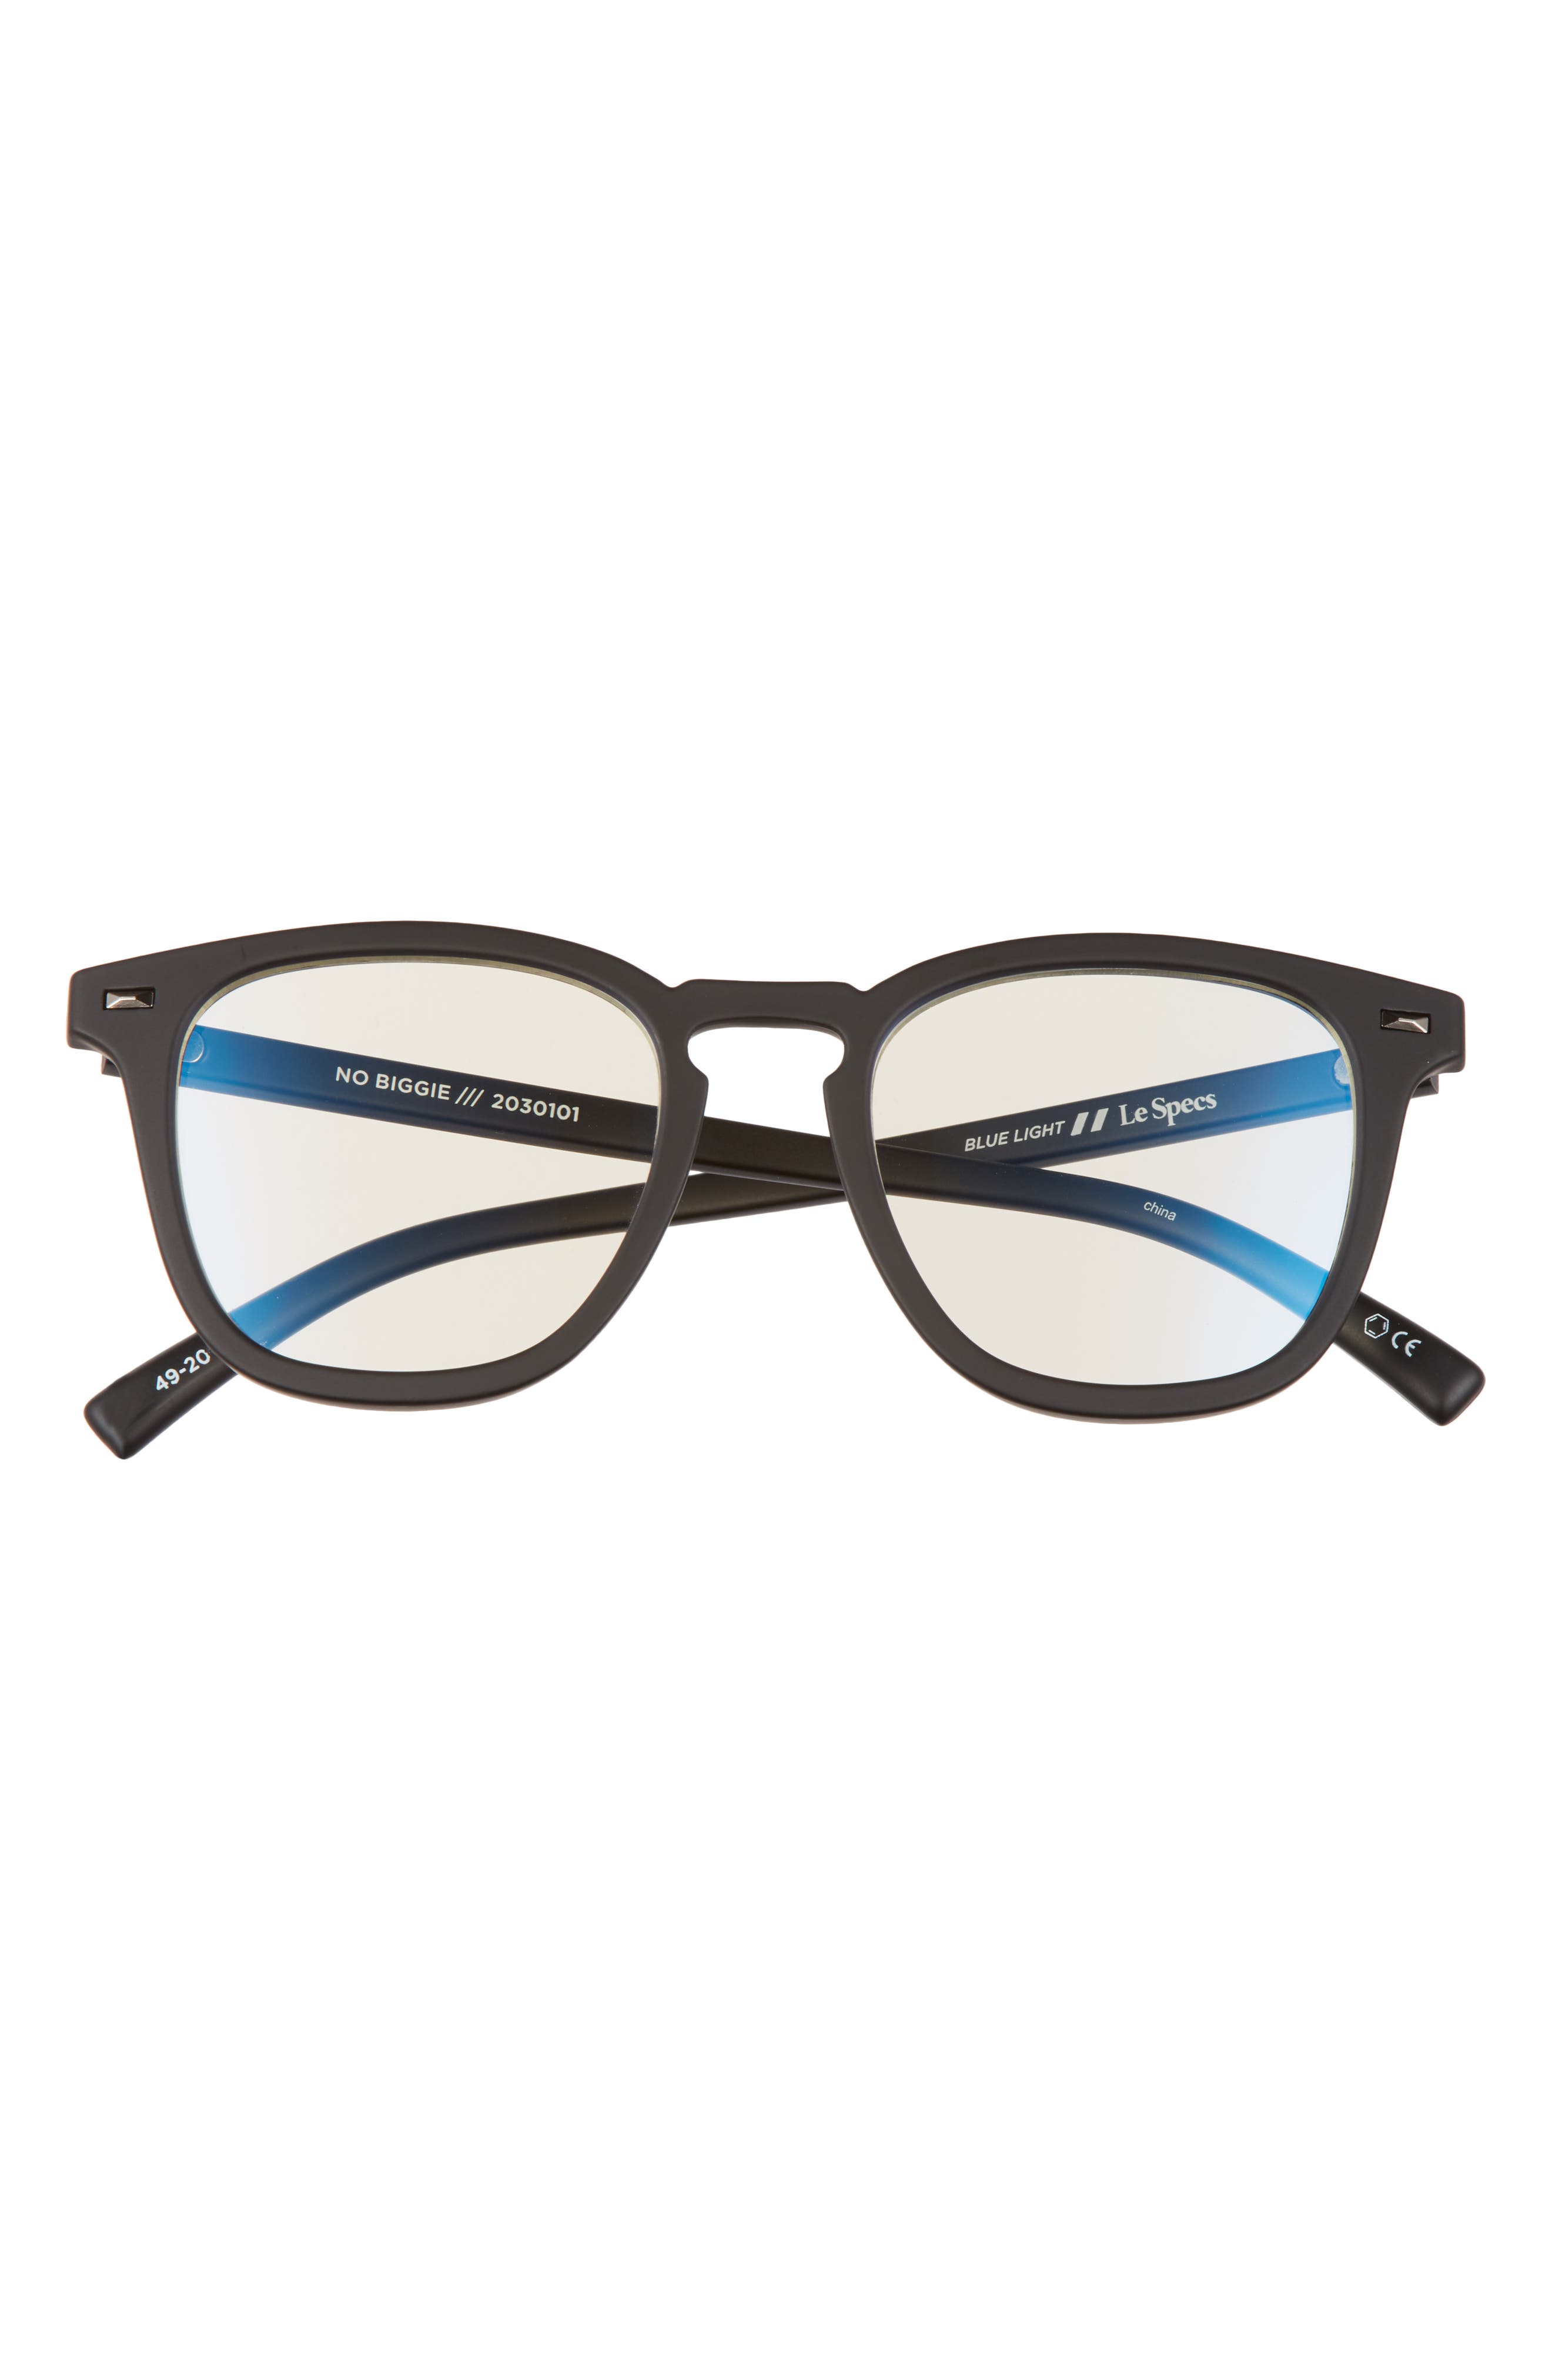 Le Specs No Biggie 49mm Blue Light Blocking Glasses in Matte Black at Nordstrom